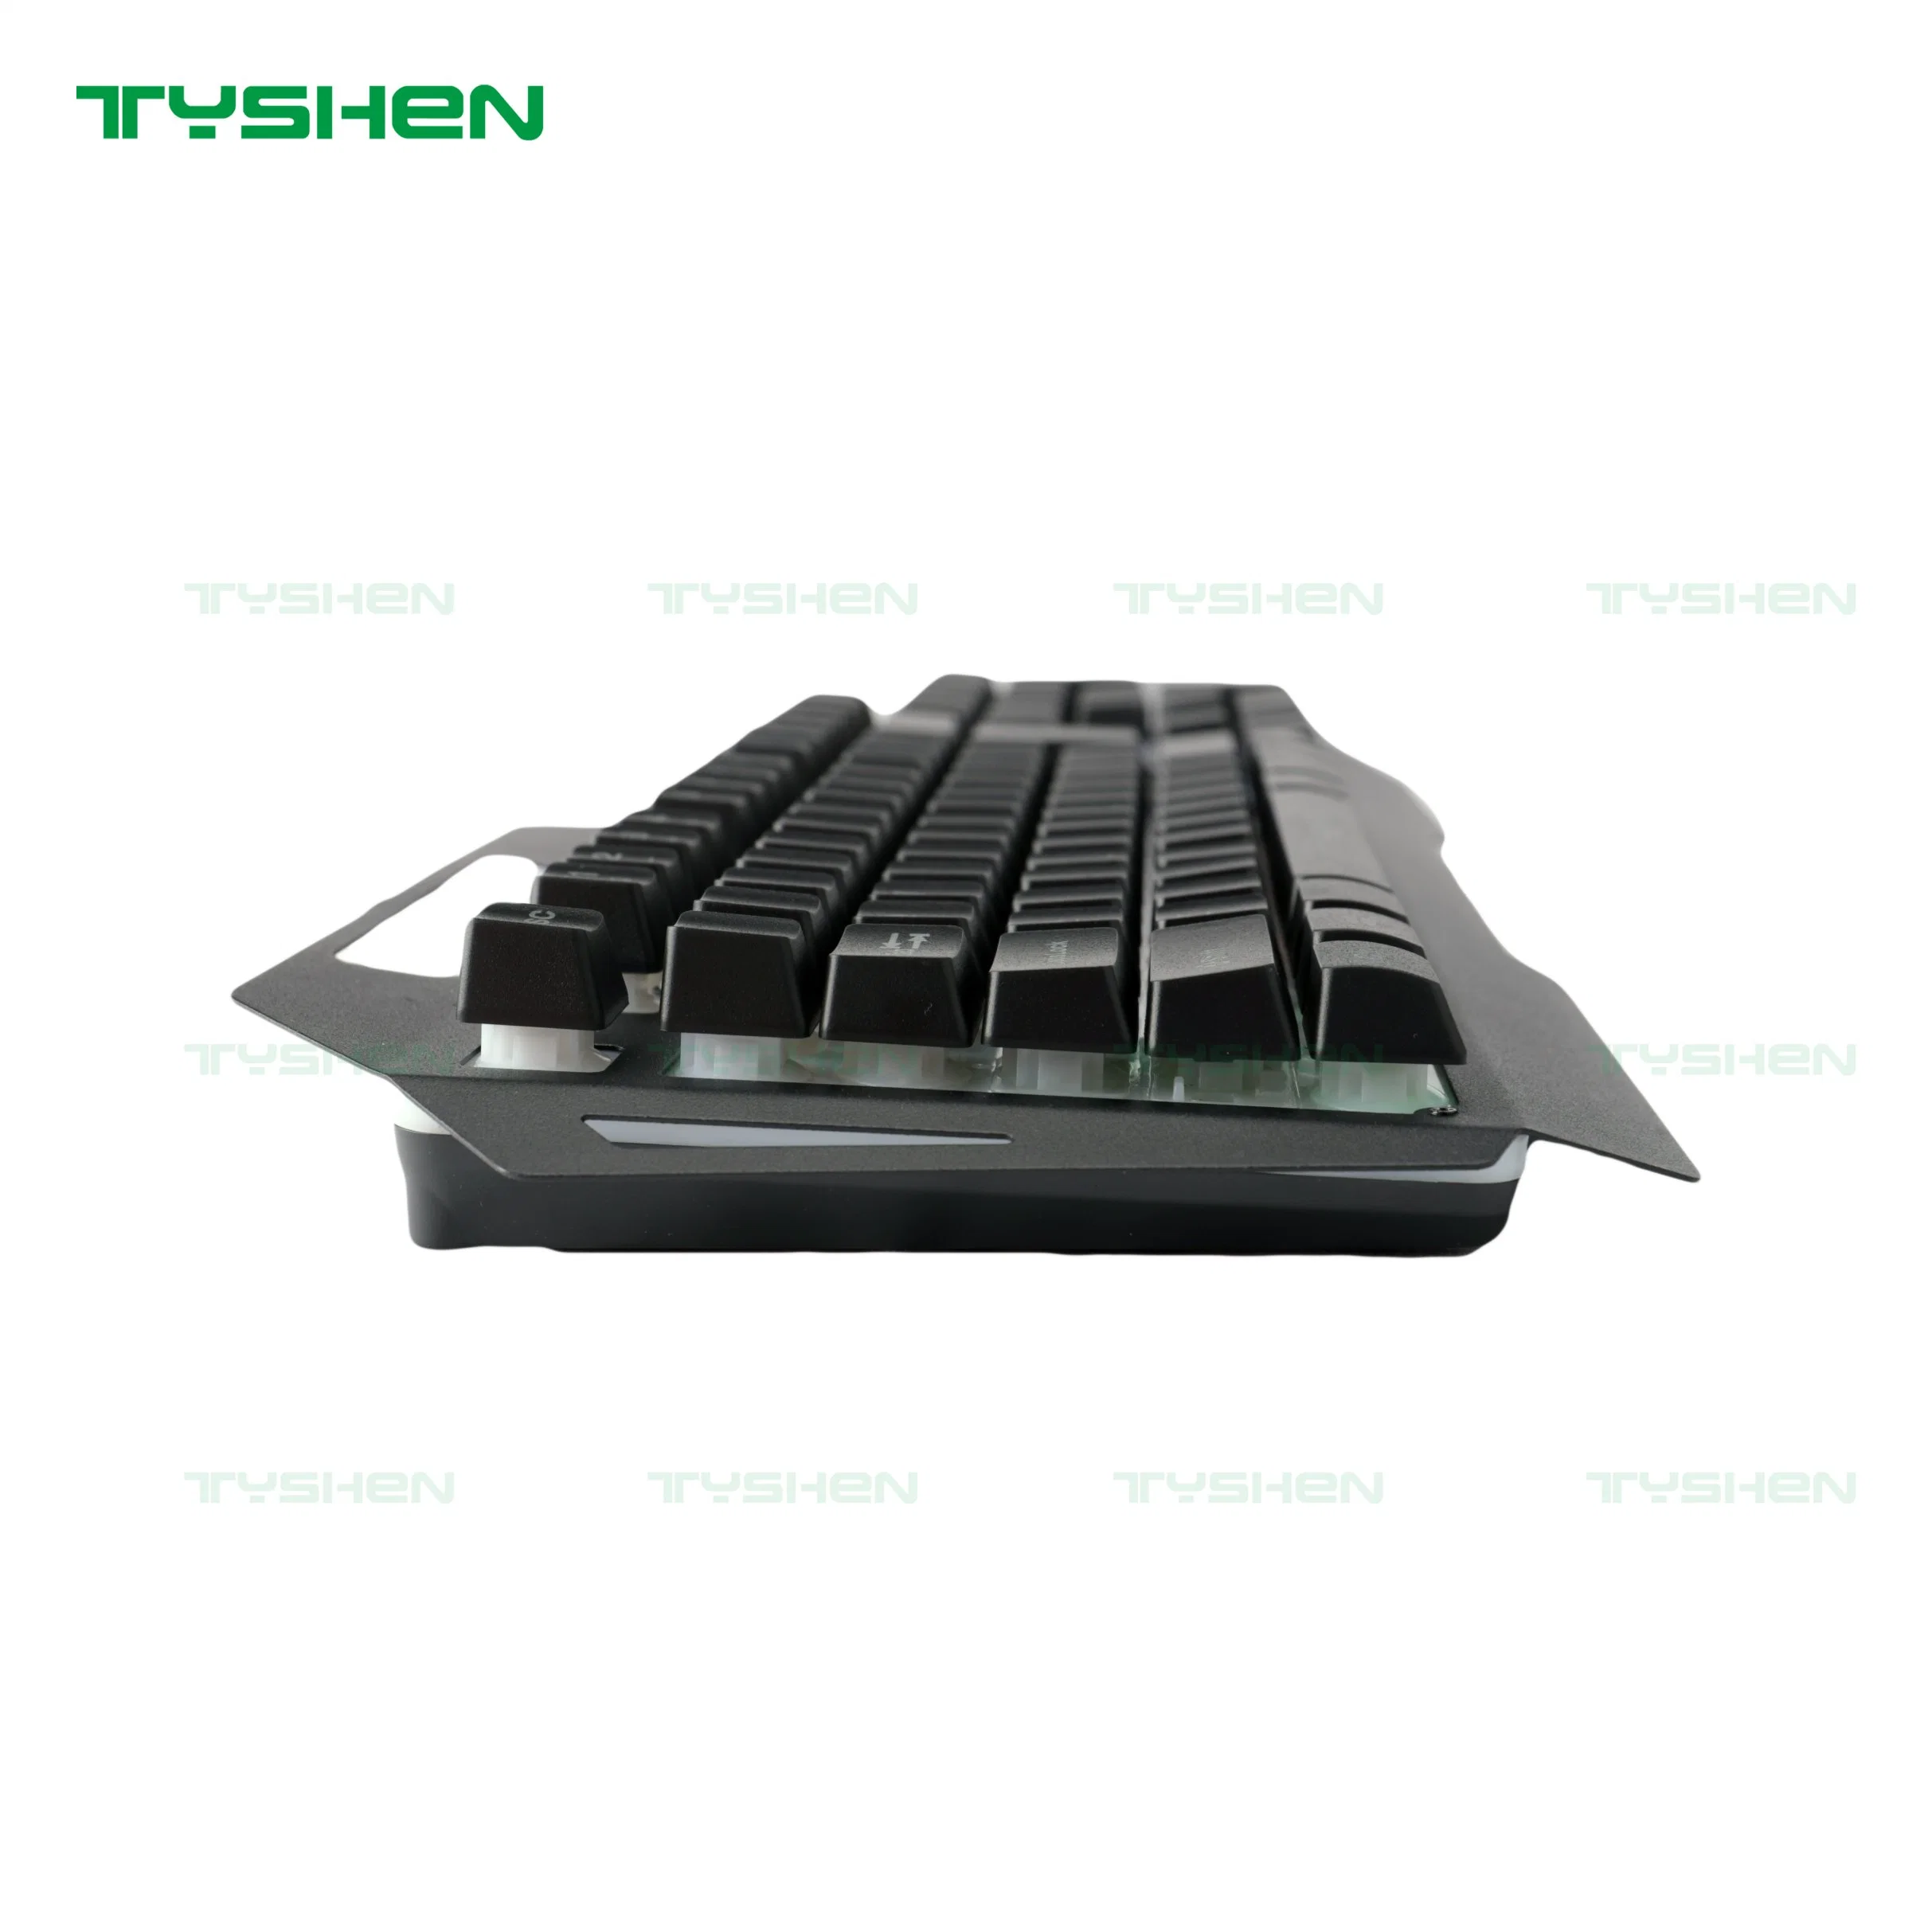 Gaming-Tastatur Aus Metall, 19 Tasten Kein Geisterbild, Design Mit Schwebenden Tasten